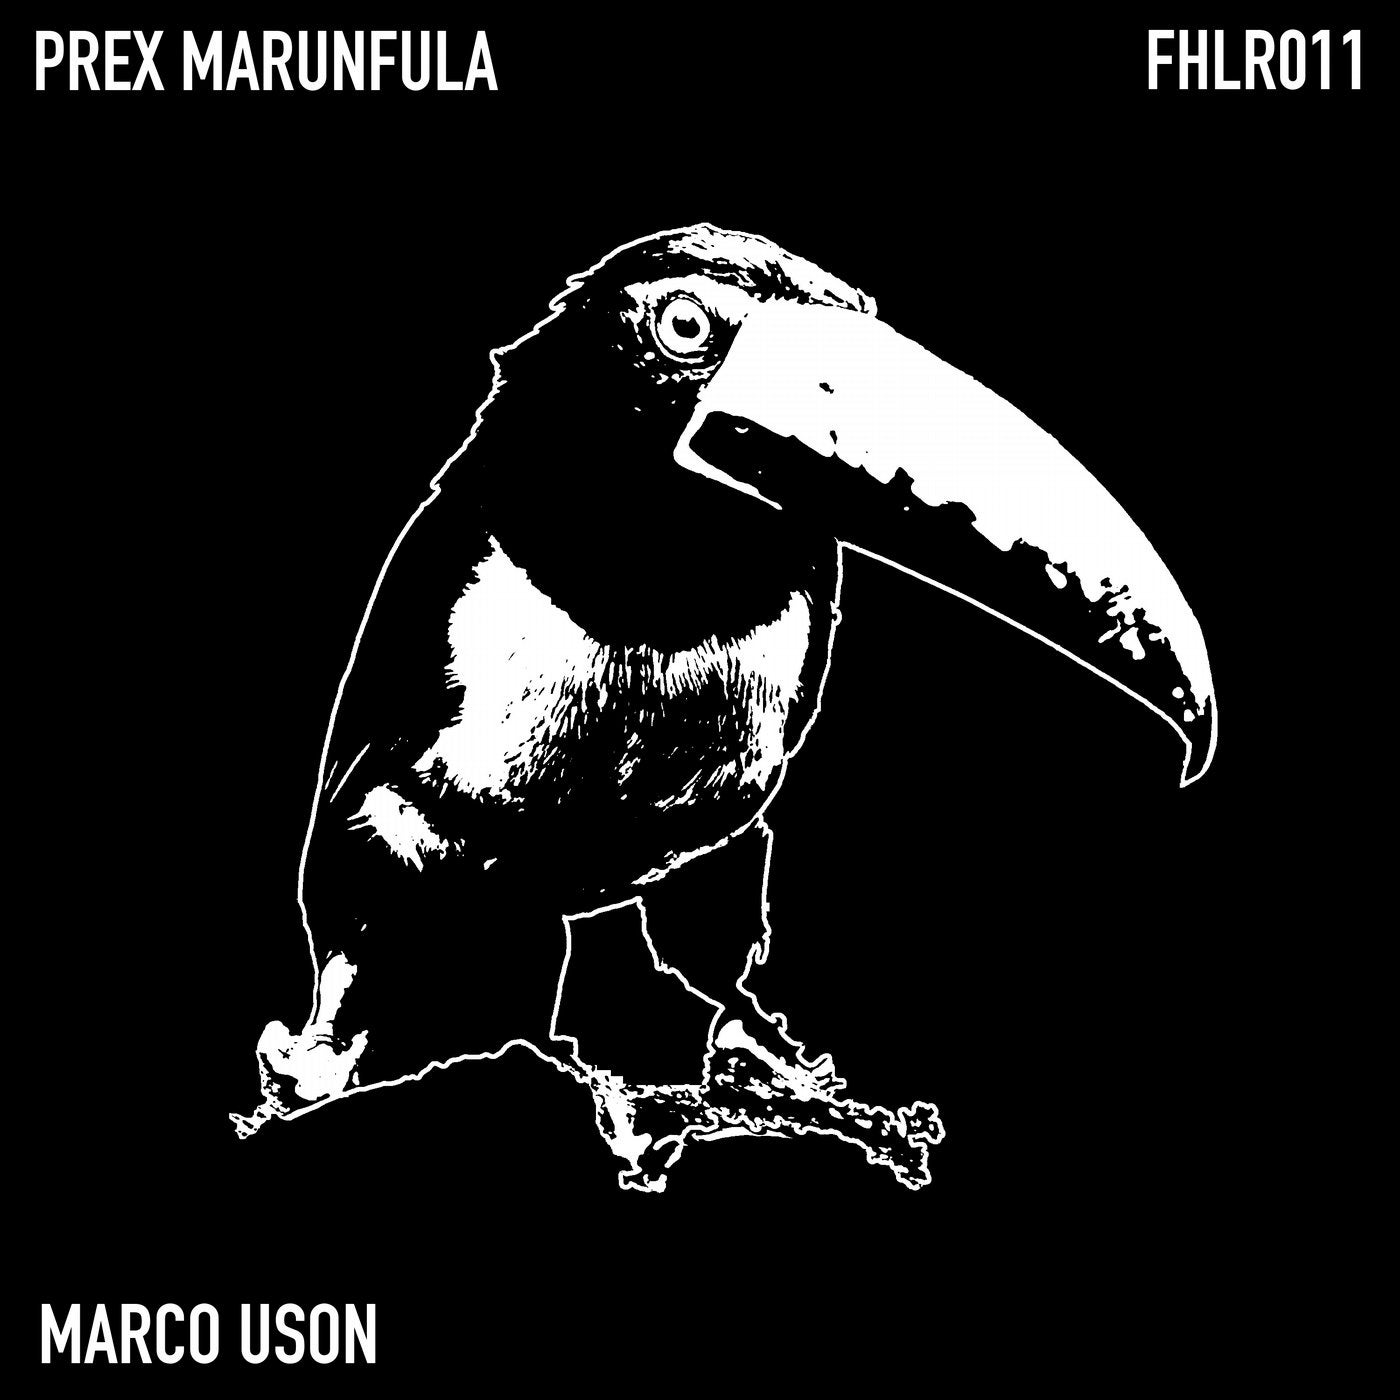 Prex Marunfula